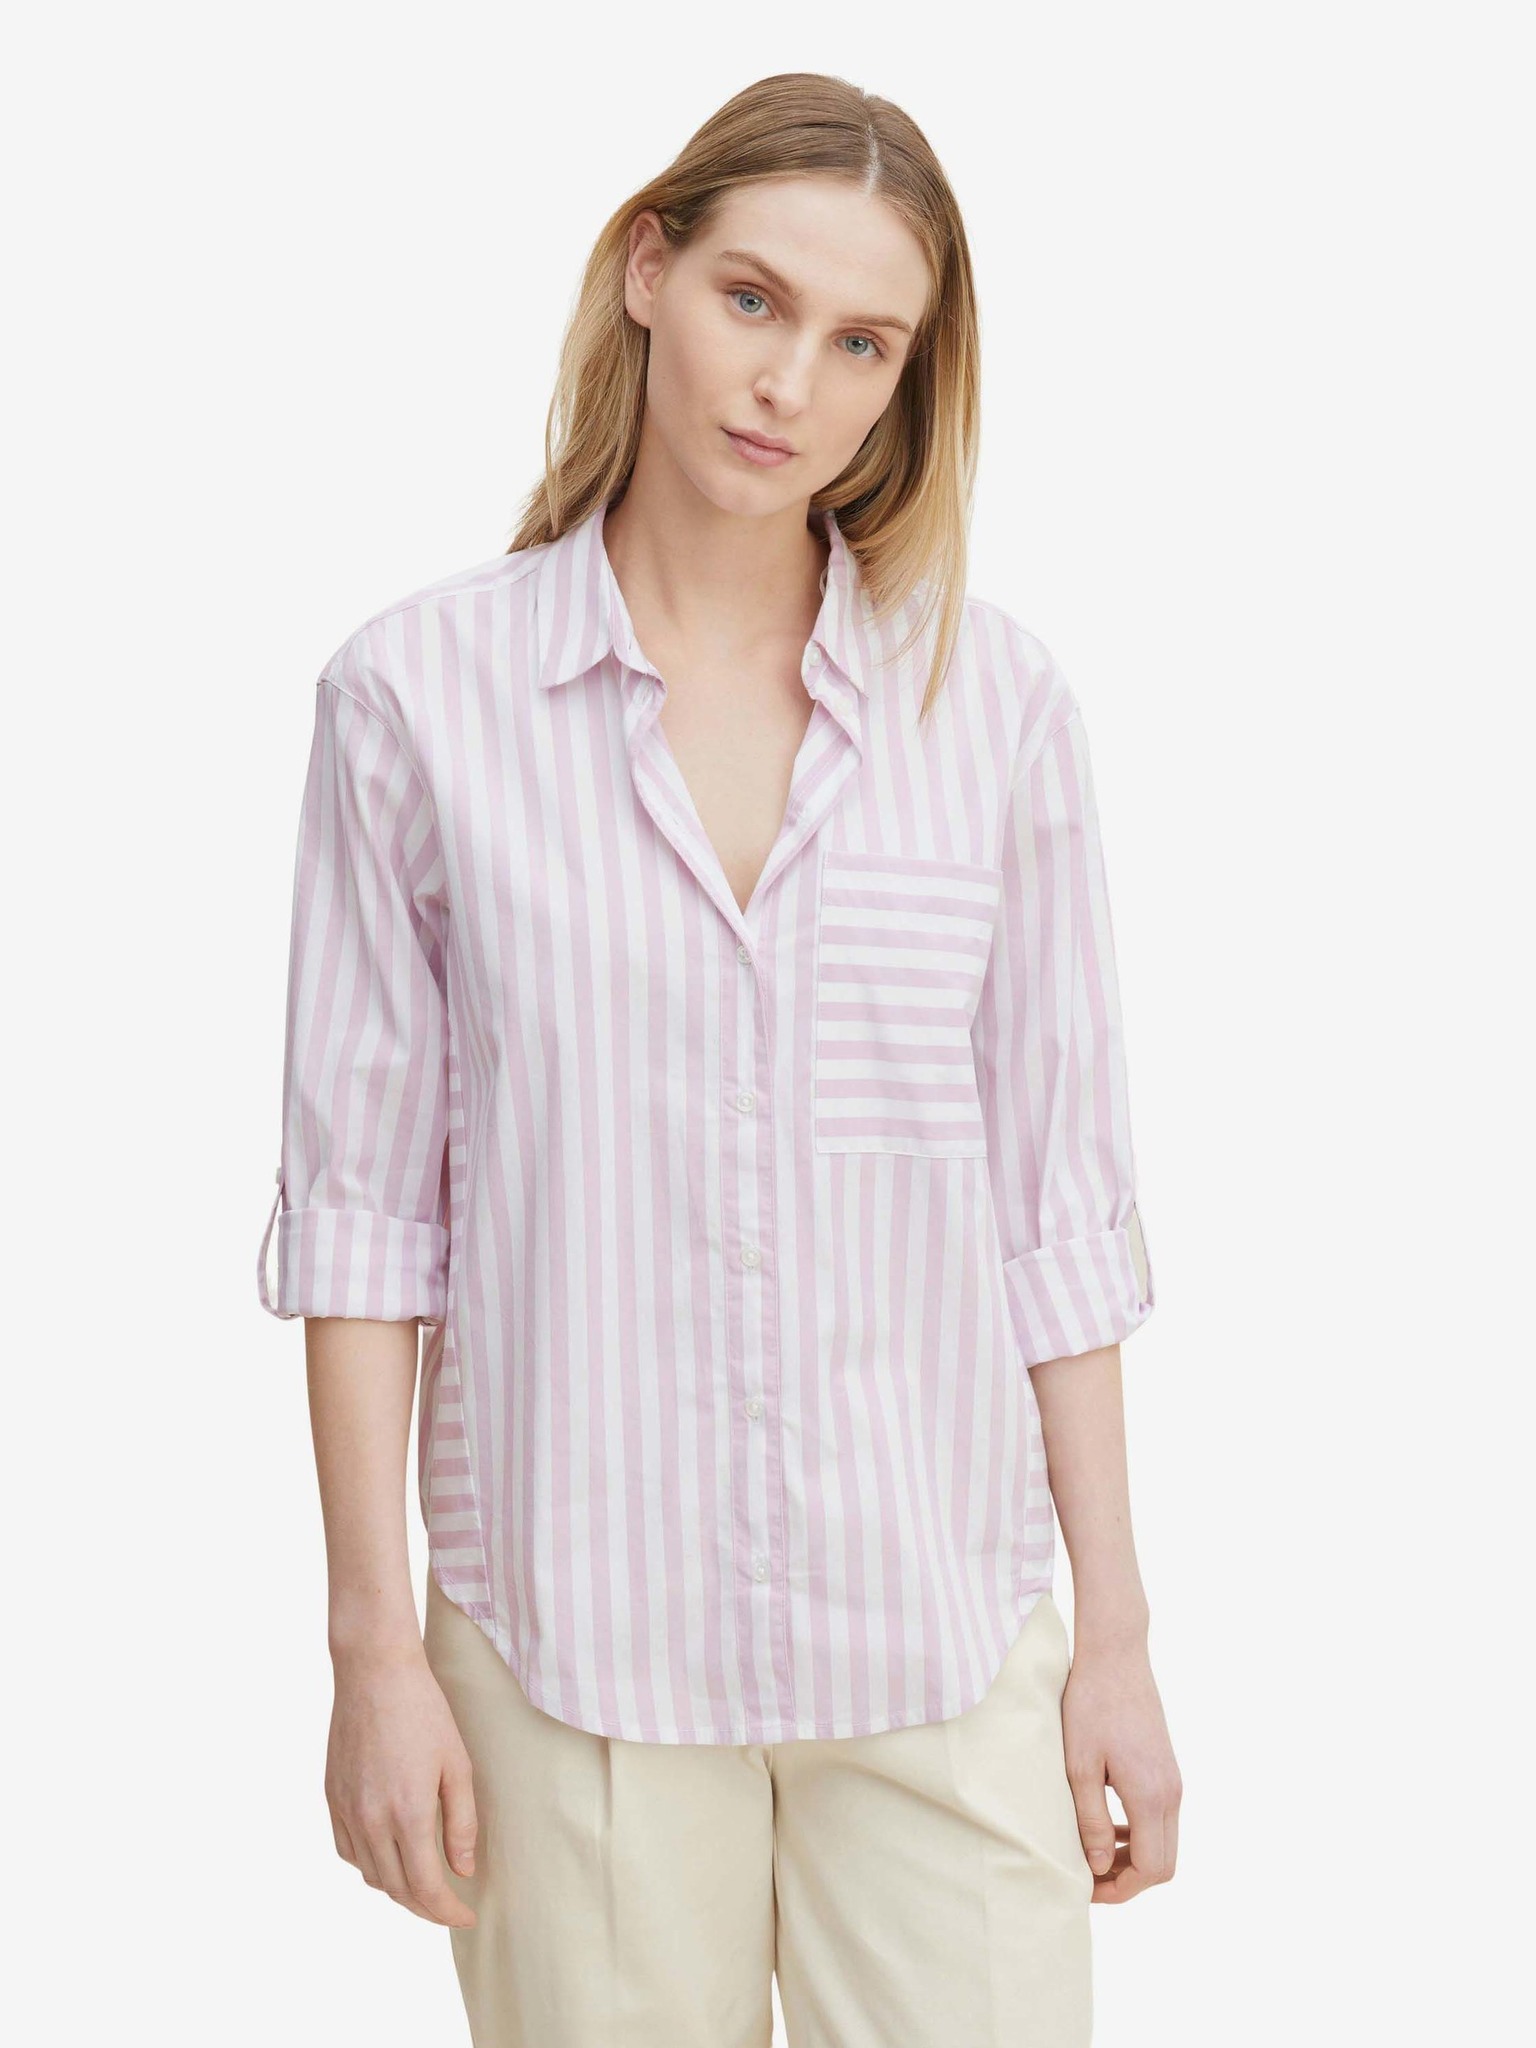 Fotografie Bílo-světle fialová dámská pruhovaná košile Tom Tailor - XS